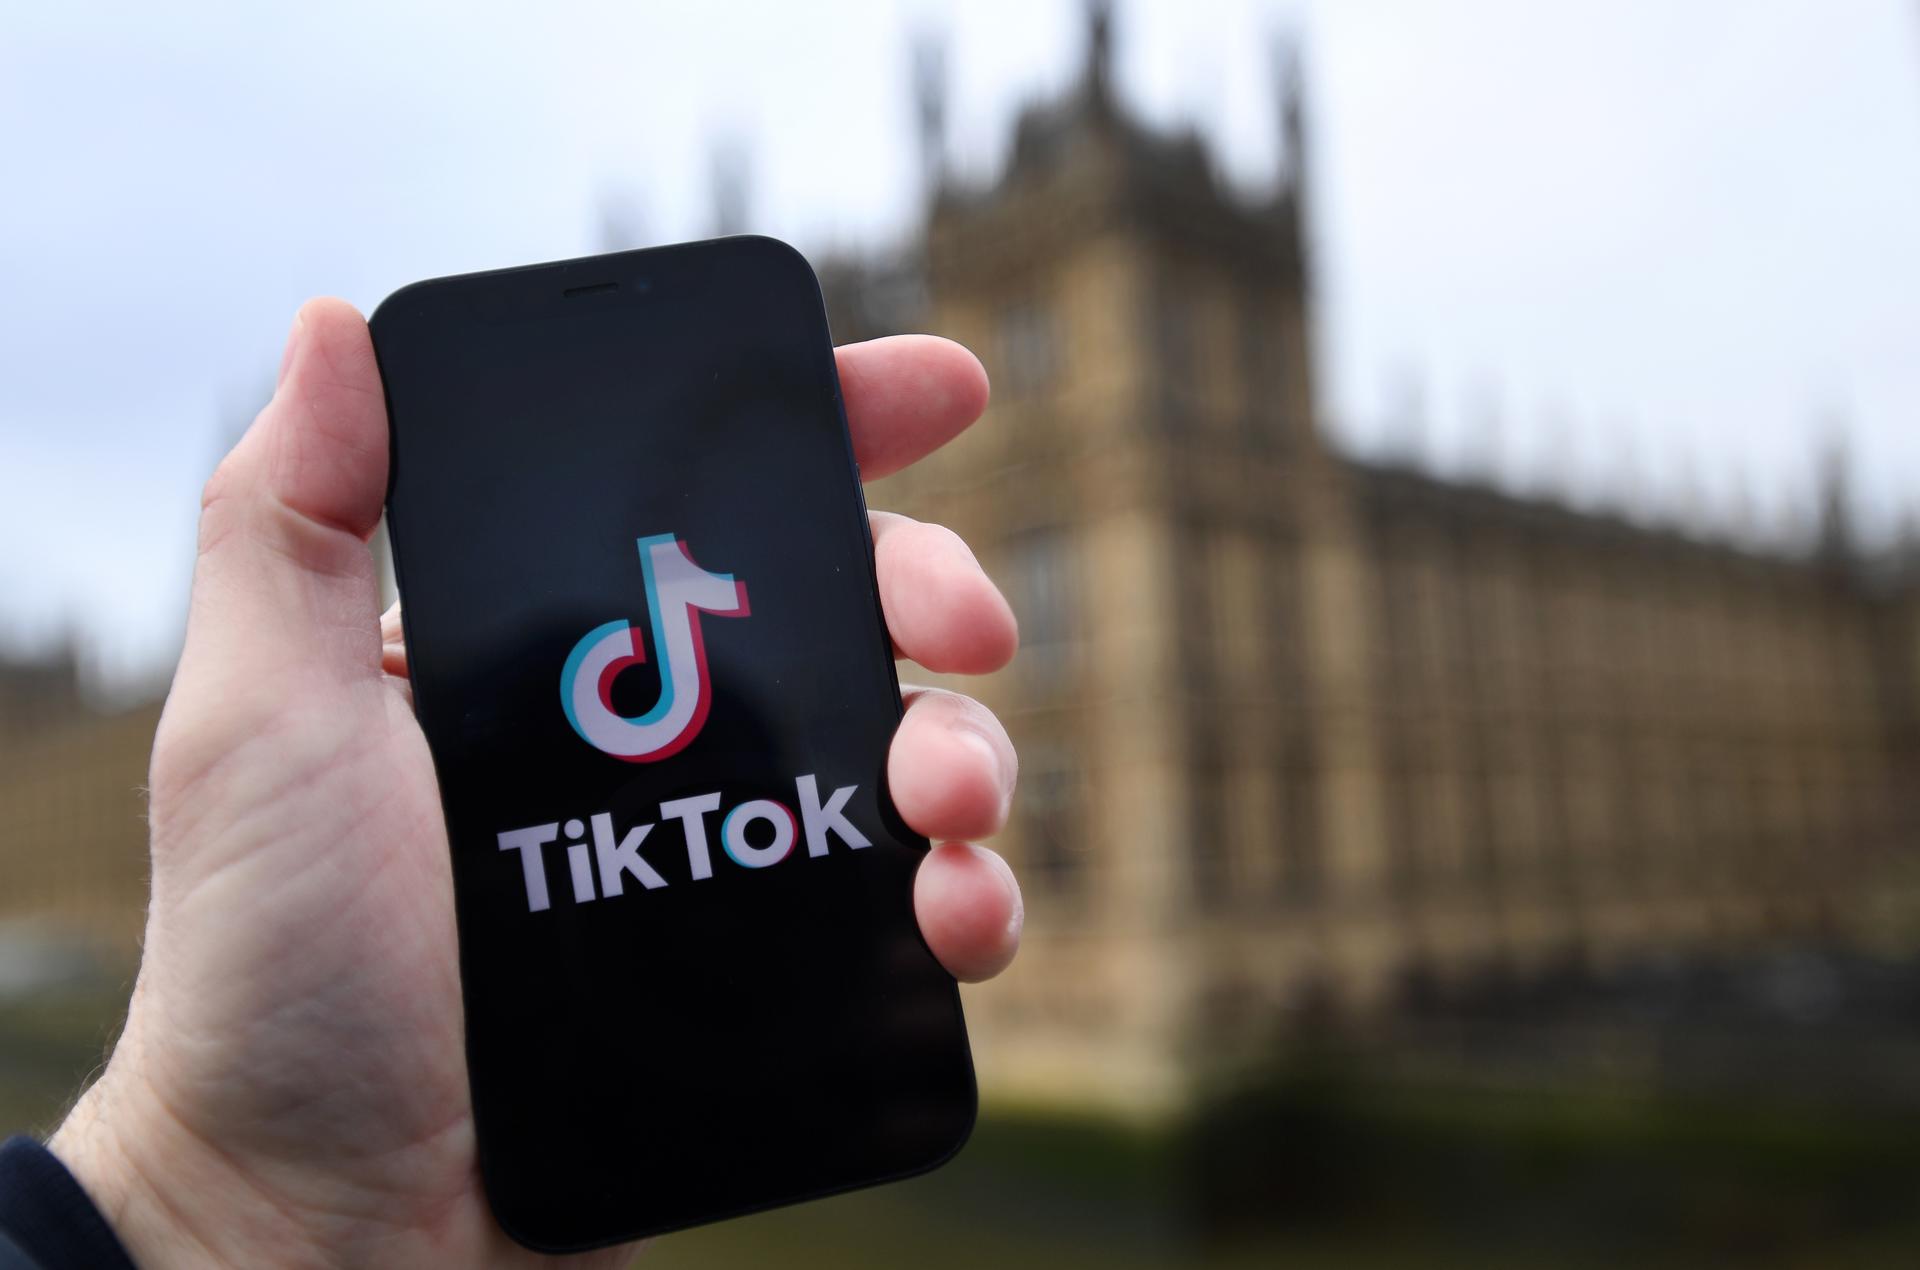 Foto de archivo del logo de la aplicación TikTok. EFE/EPA/ANDY RAIN